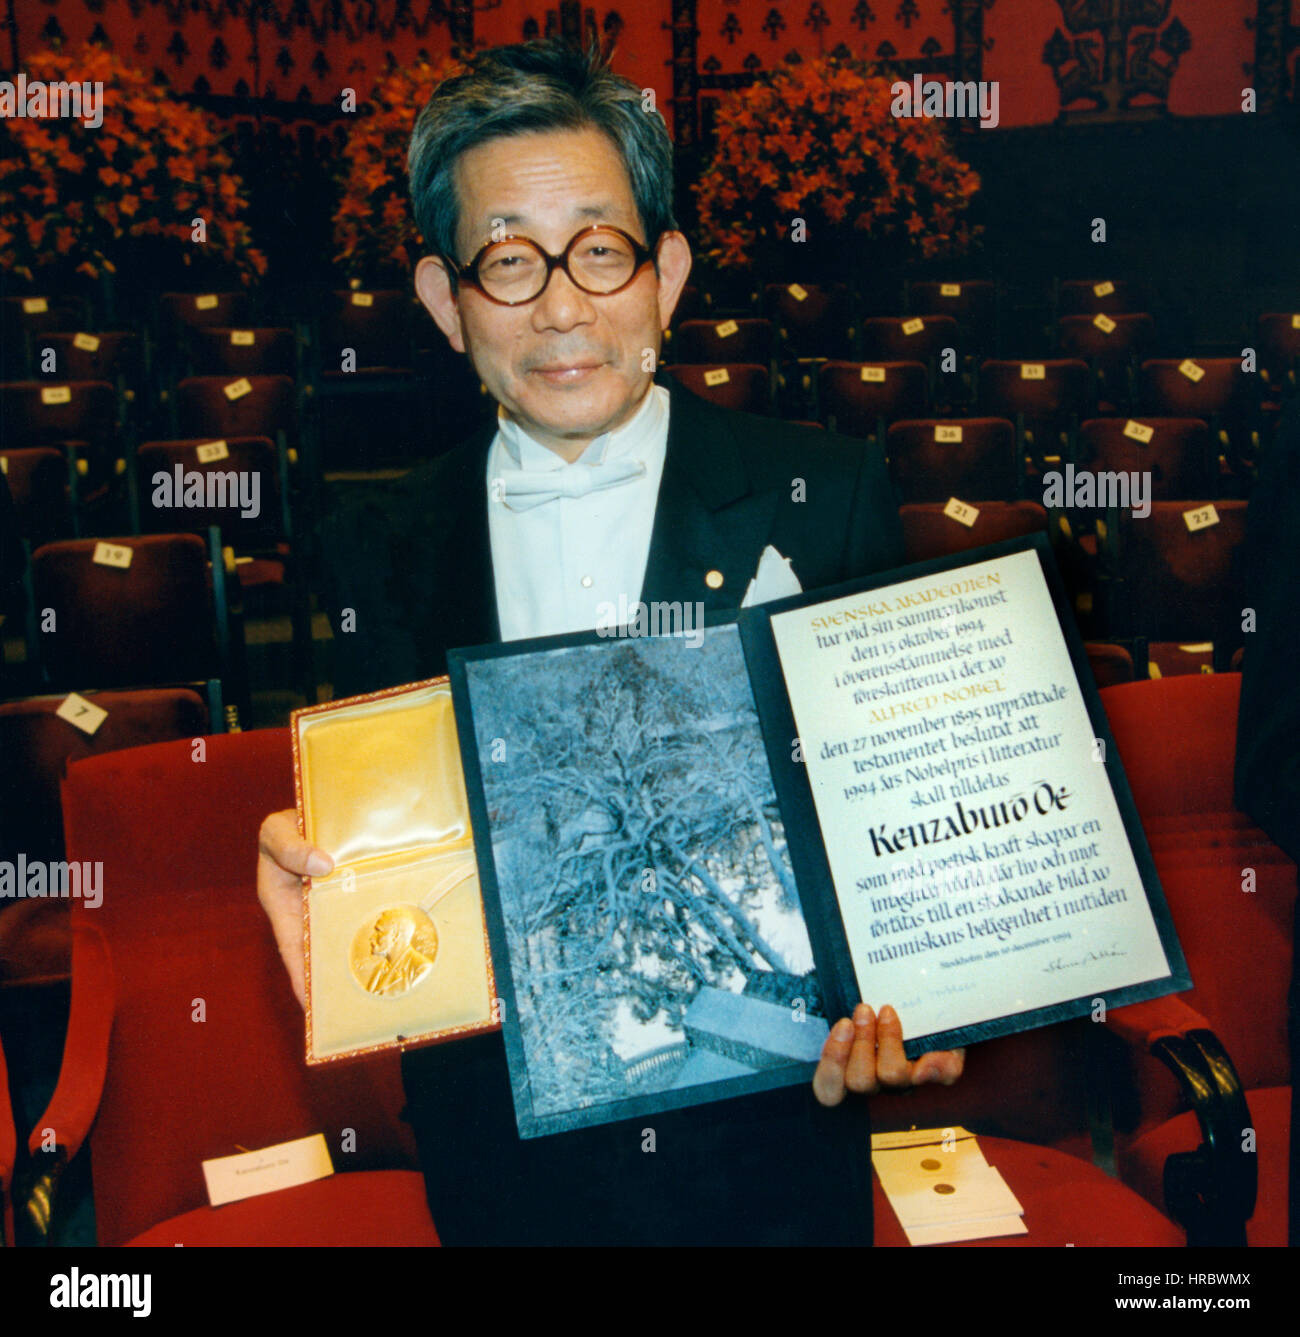 KENZABURE OE japanischer Autor und Nobelpreisträger für Nobelpreis in der Literatur mit Medaille und Urkunde beim Bankett 1994 Stockfoto